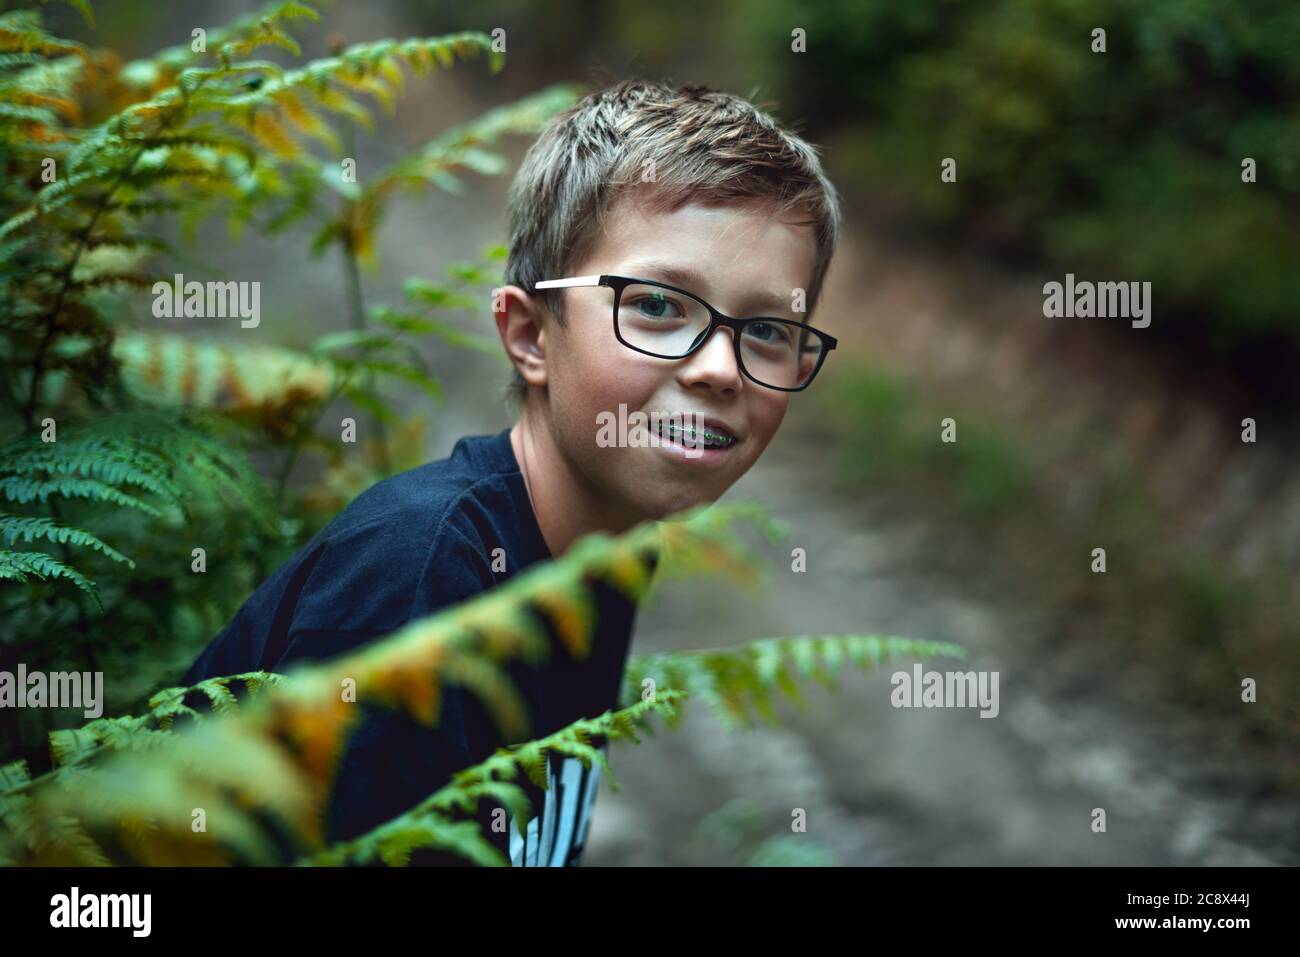 Retrato de un joven adolescente feliz jugando en el bosque, escondiéndose detrás del helecho. Foto de stock